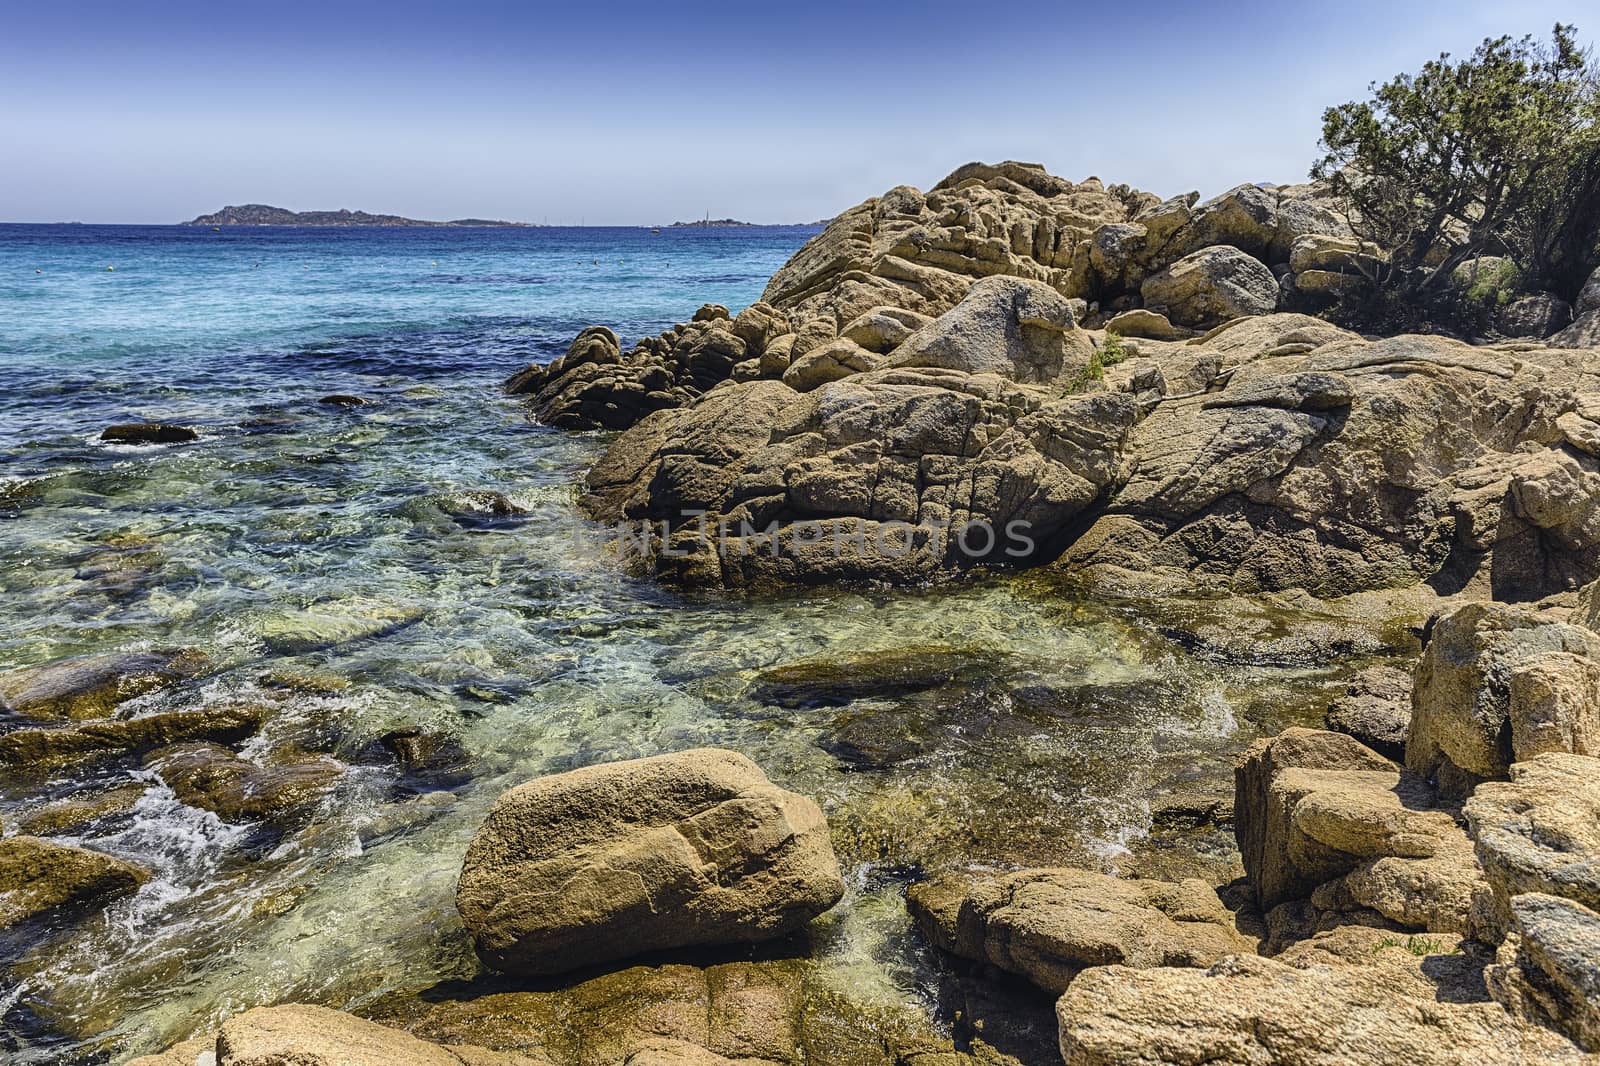 The scenic Capriccioli beach in Costa Smeralda, Sardinia, Italy by marcorubino